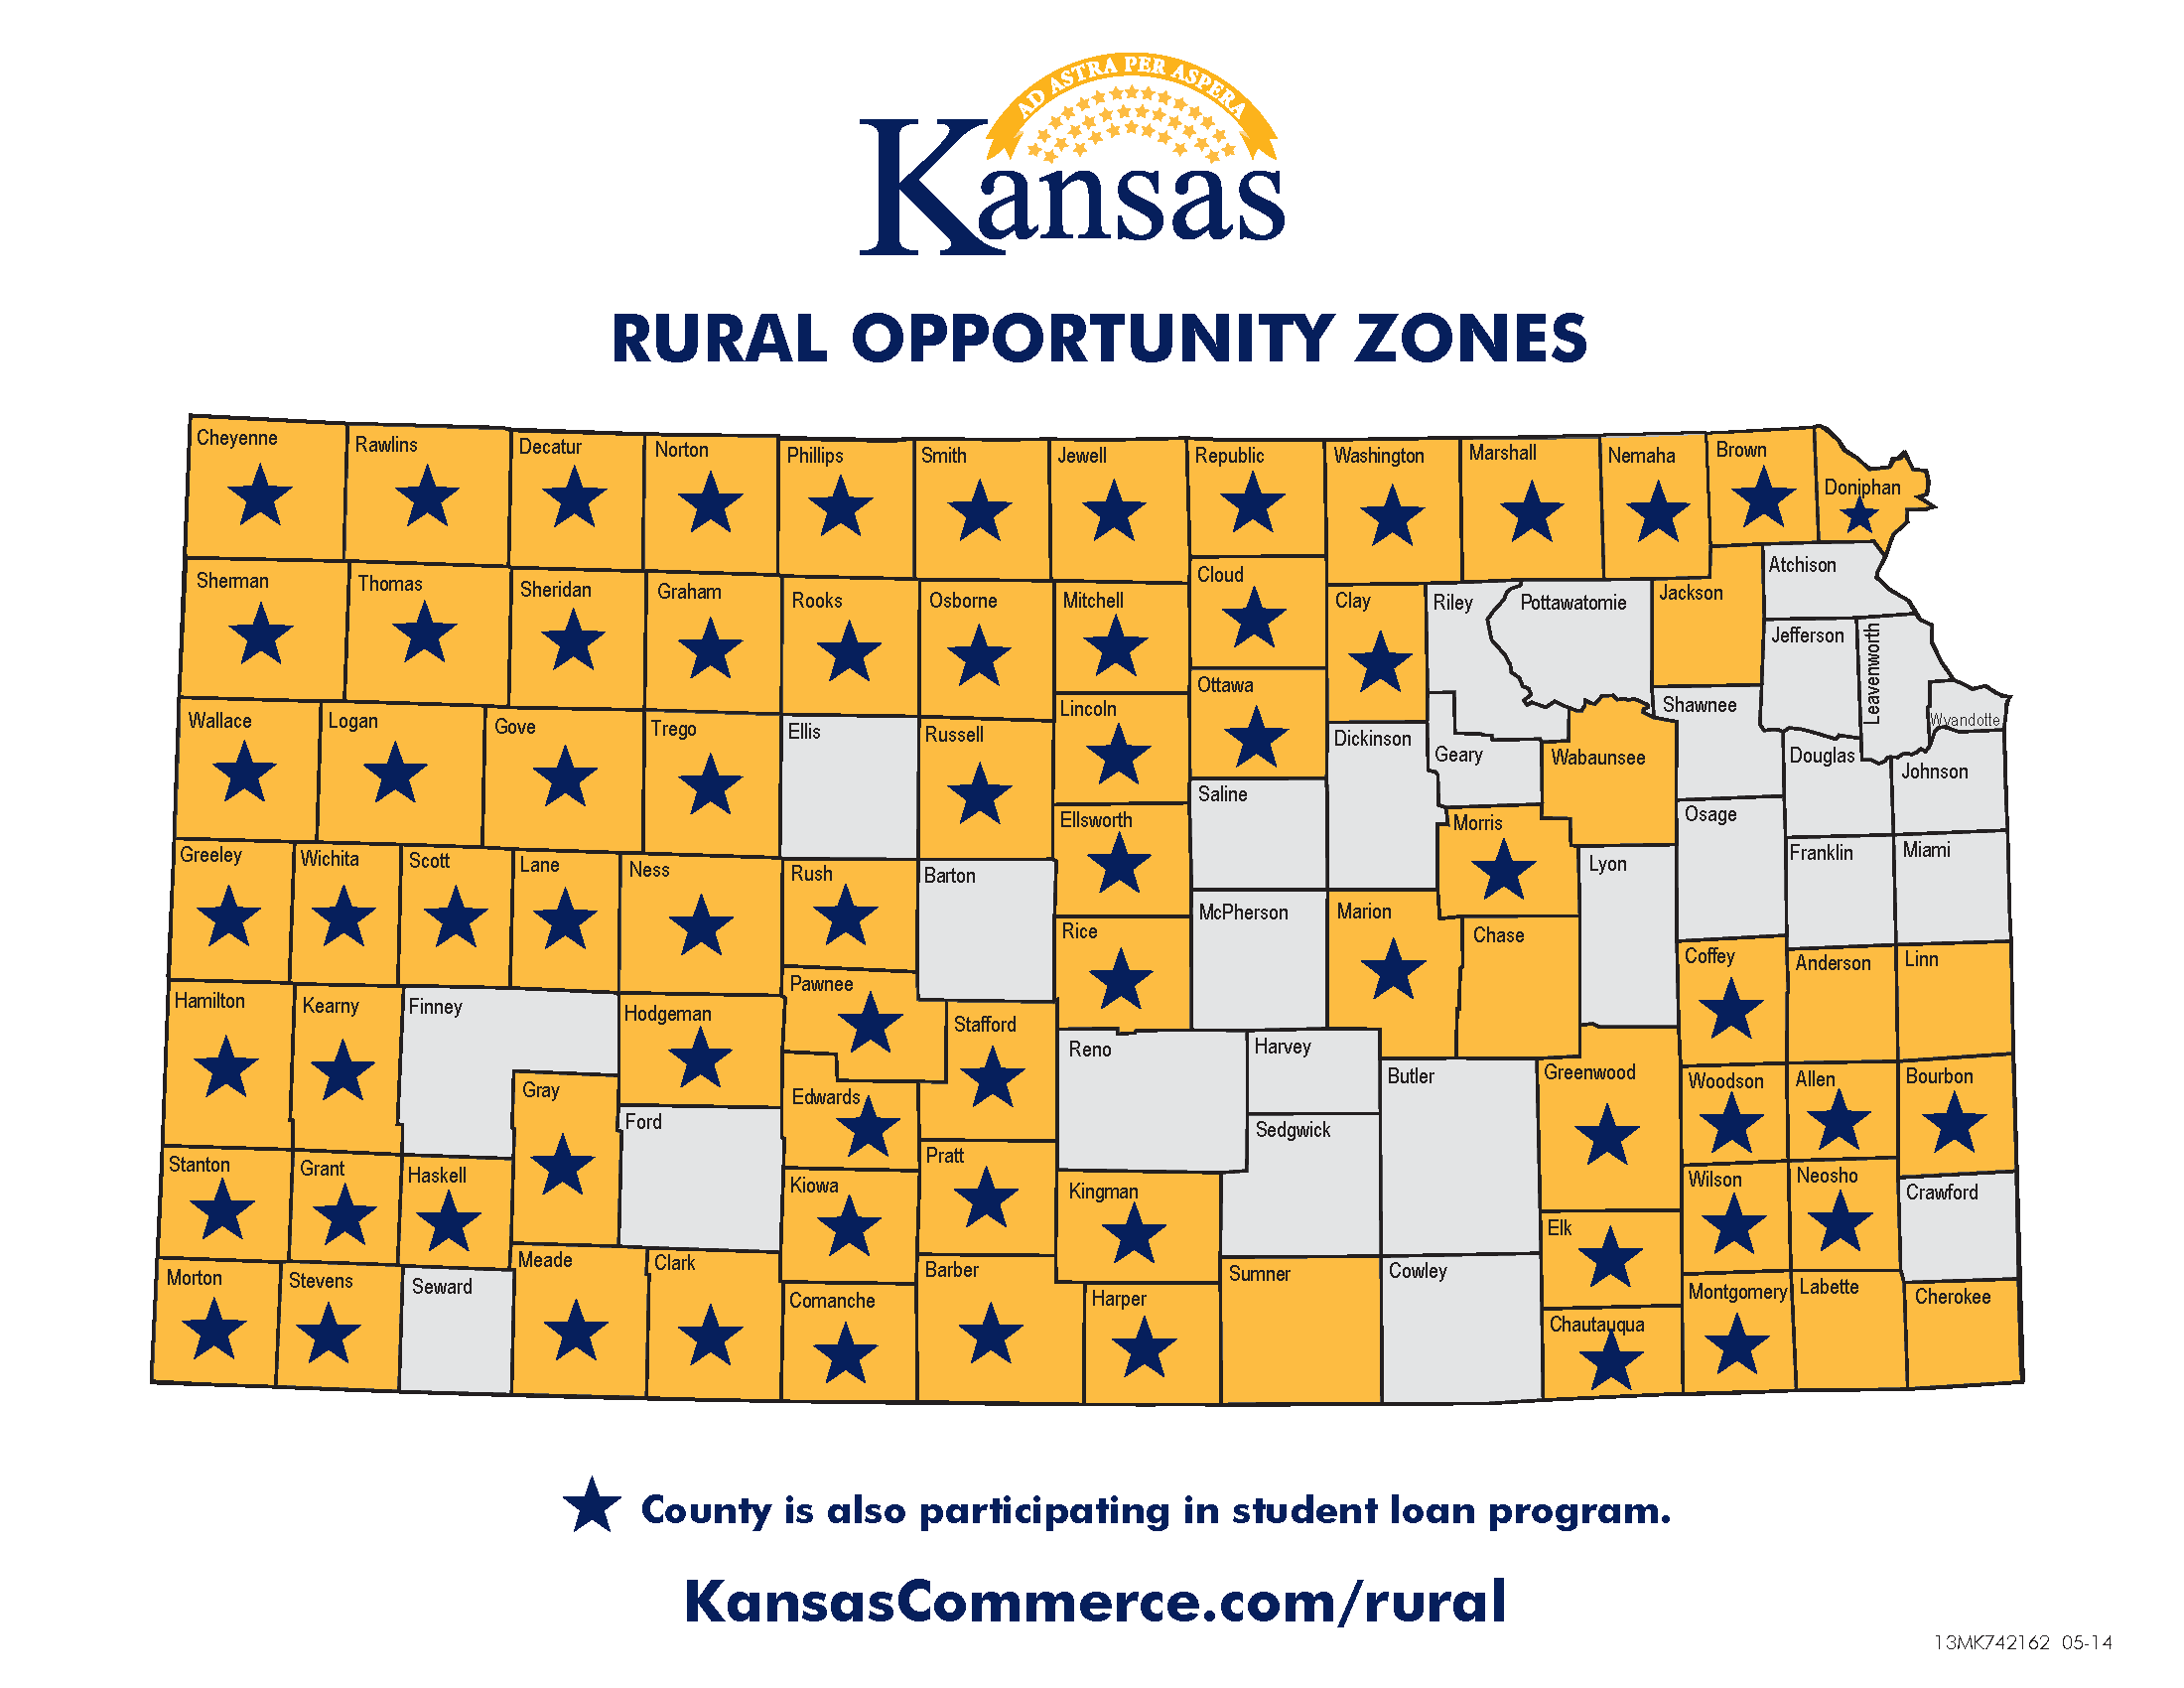 Los condados de Kansas que tienen una estrella en este mapa participan en el programa de ayuda para el pago de préstamos estudiantiles (KansasCommerce)